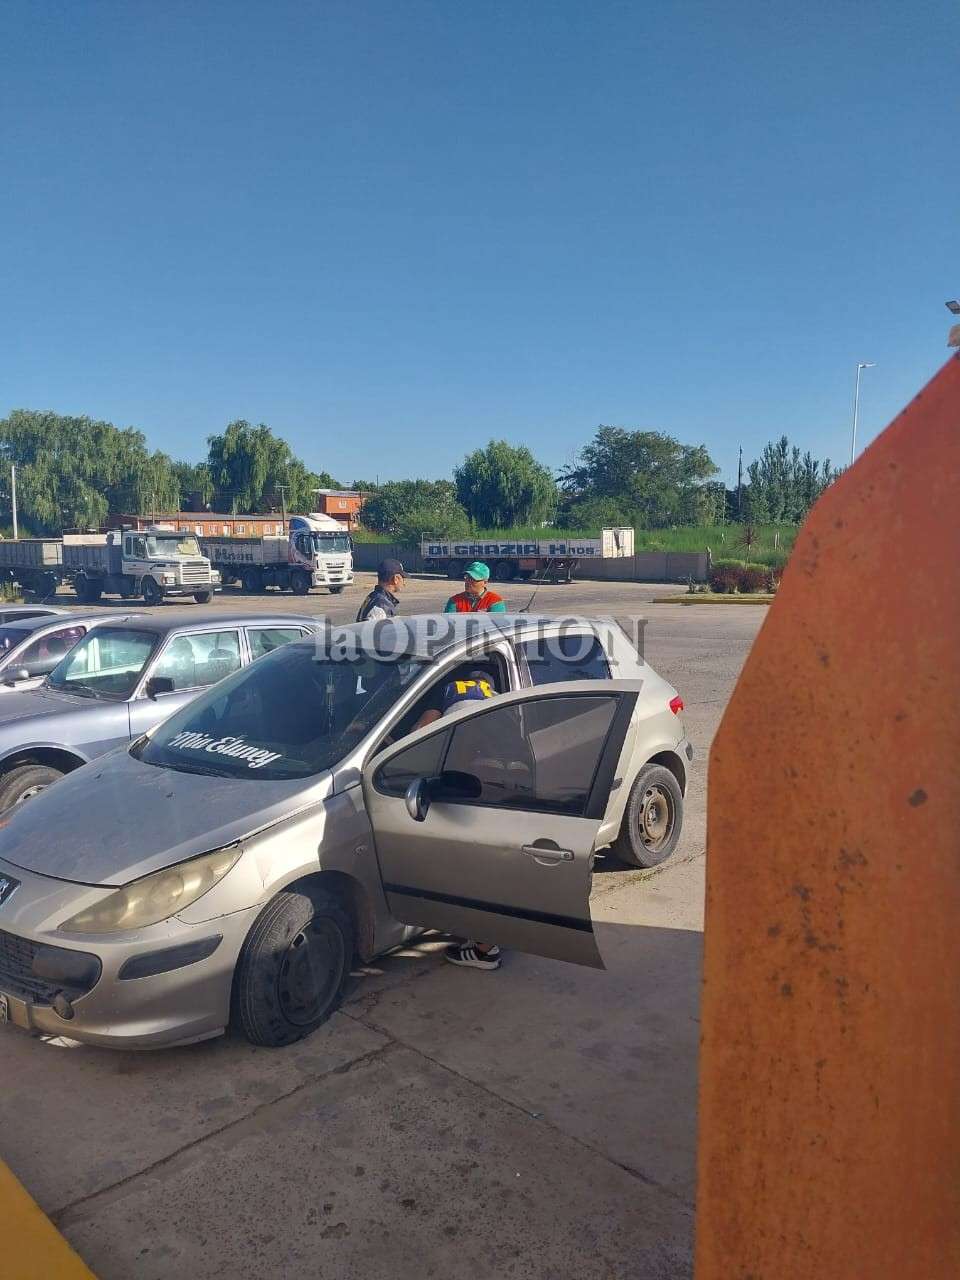 Peugeot asesinato Umma en Estación de Servicio